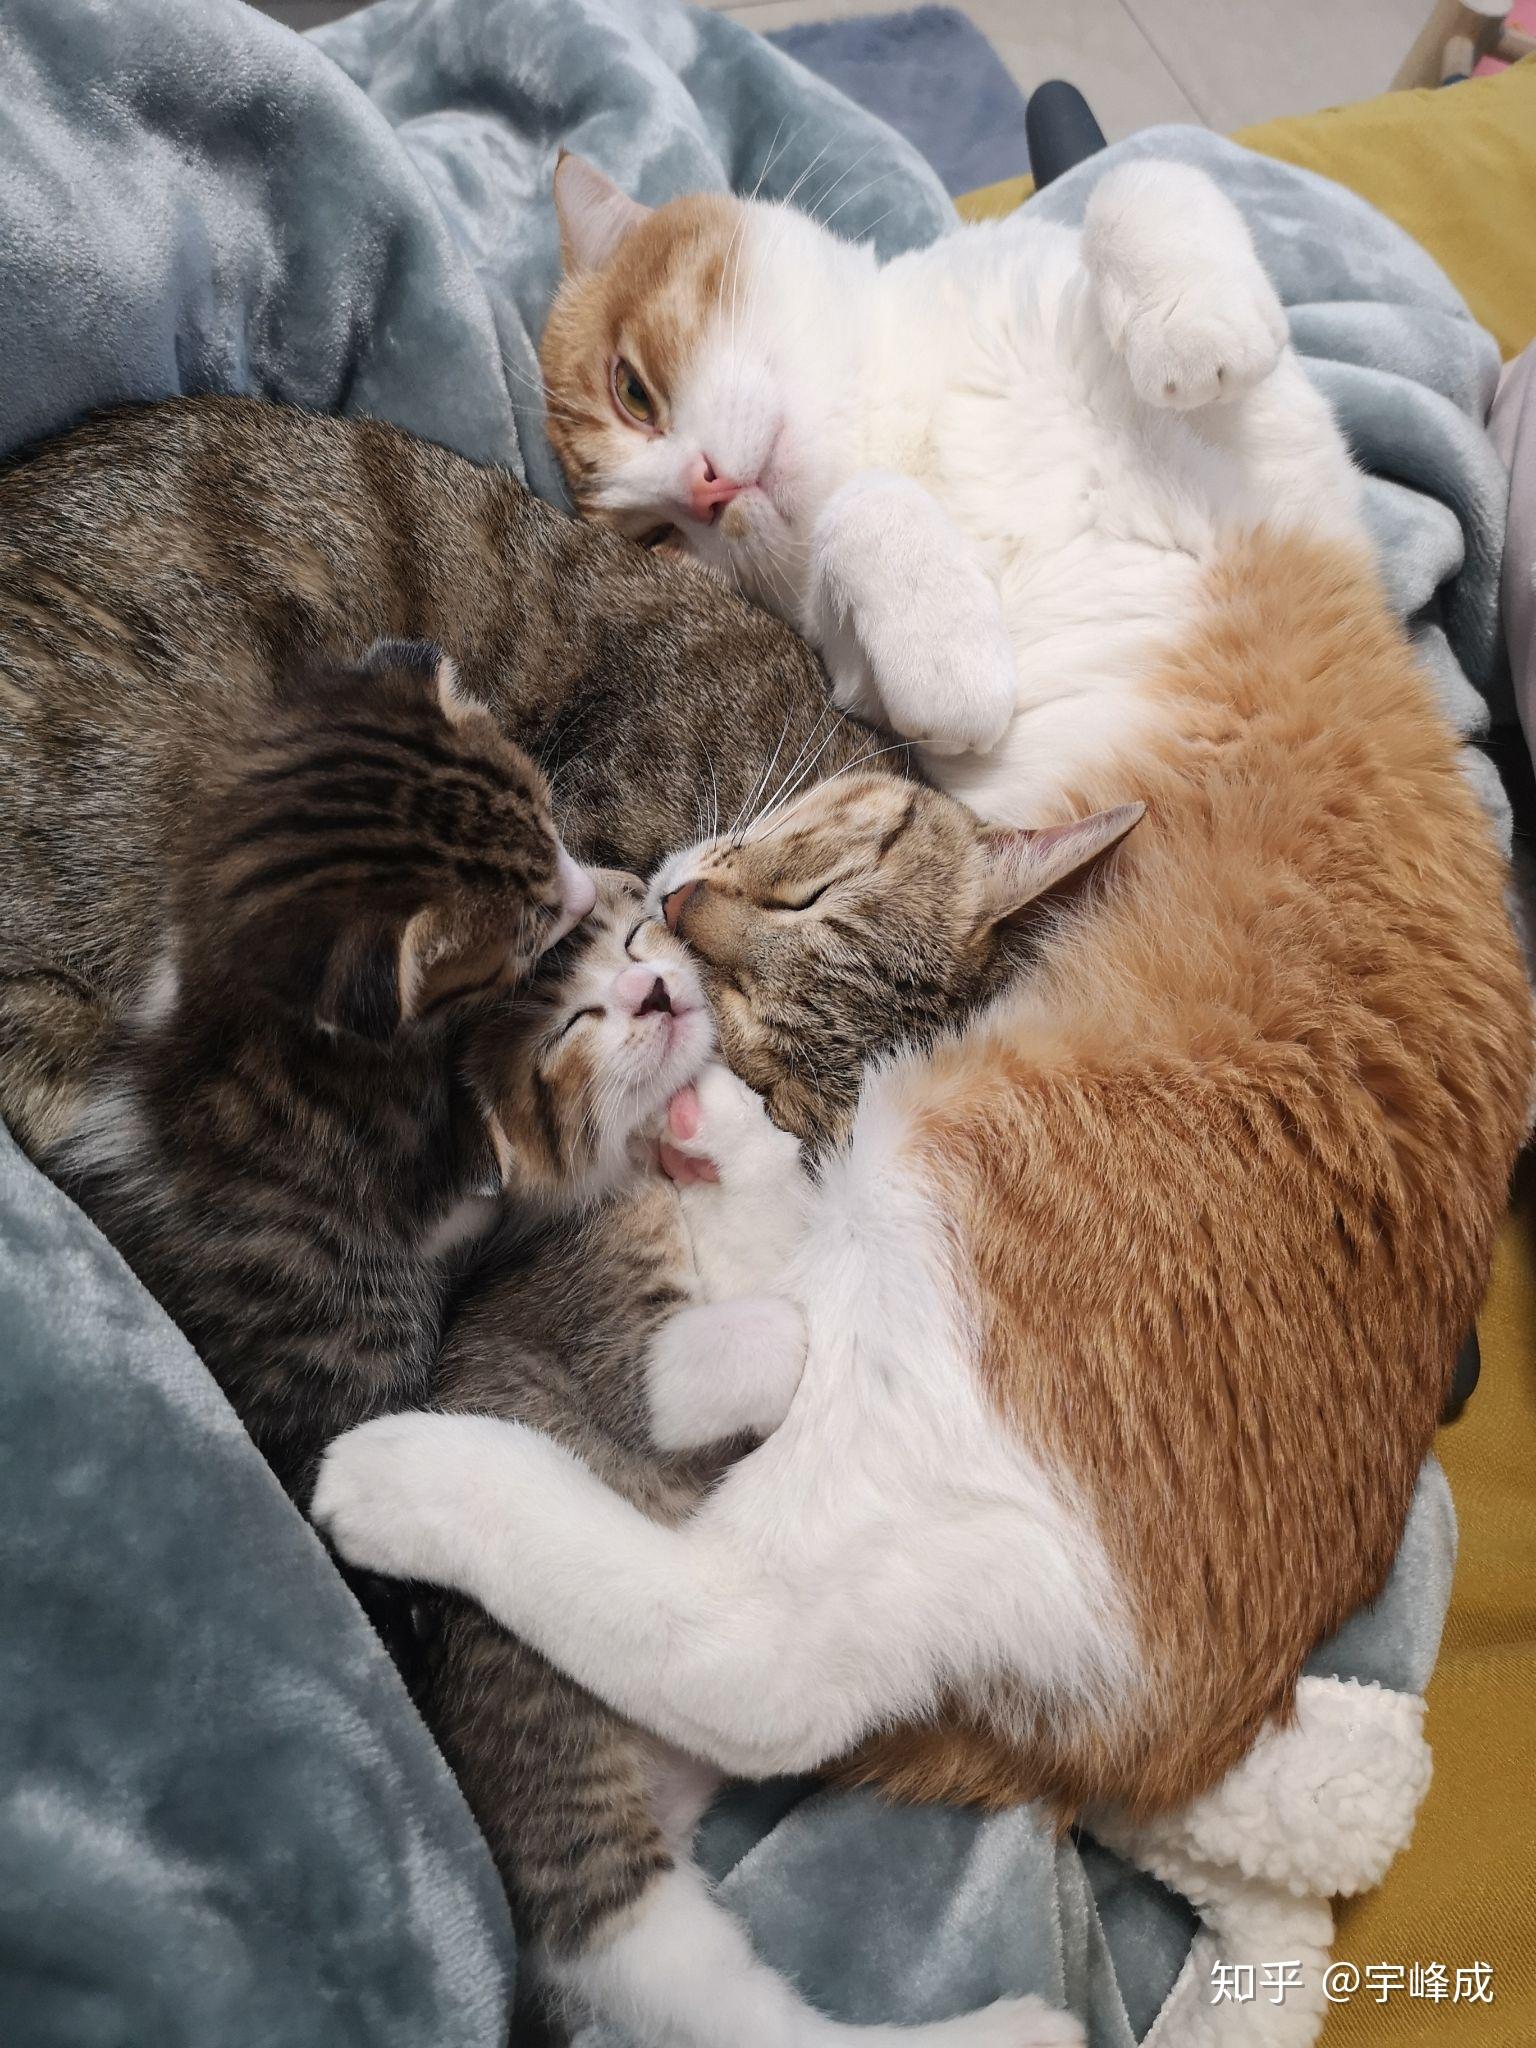 大家有可爱的猫猫抱在一起睡觉的视频或图片嘛